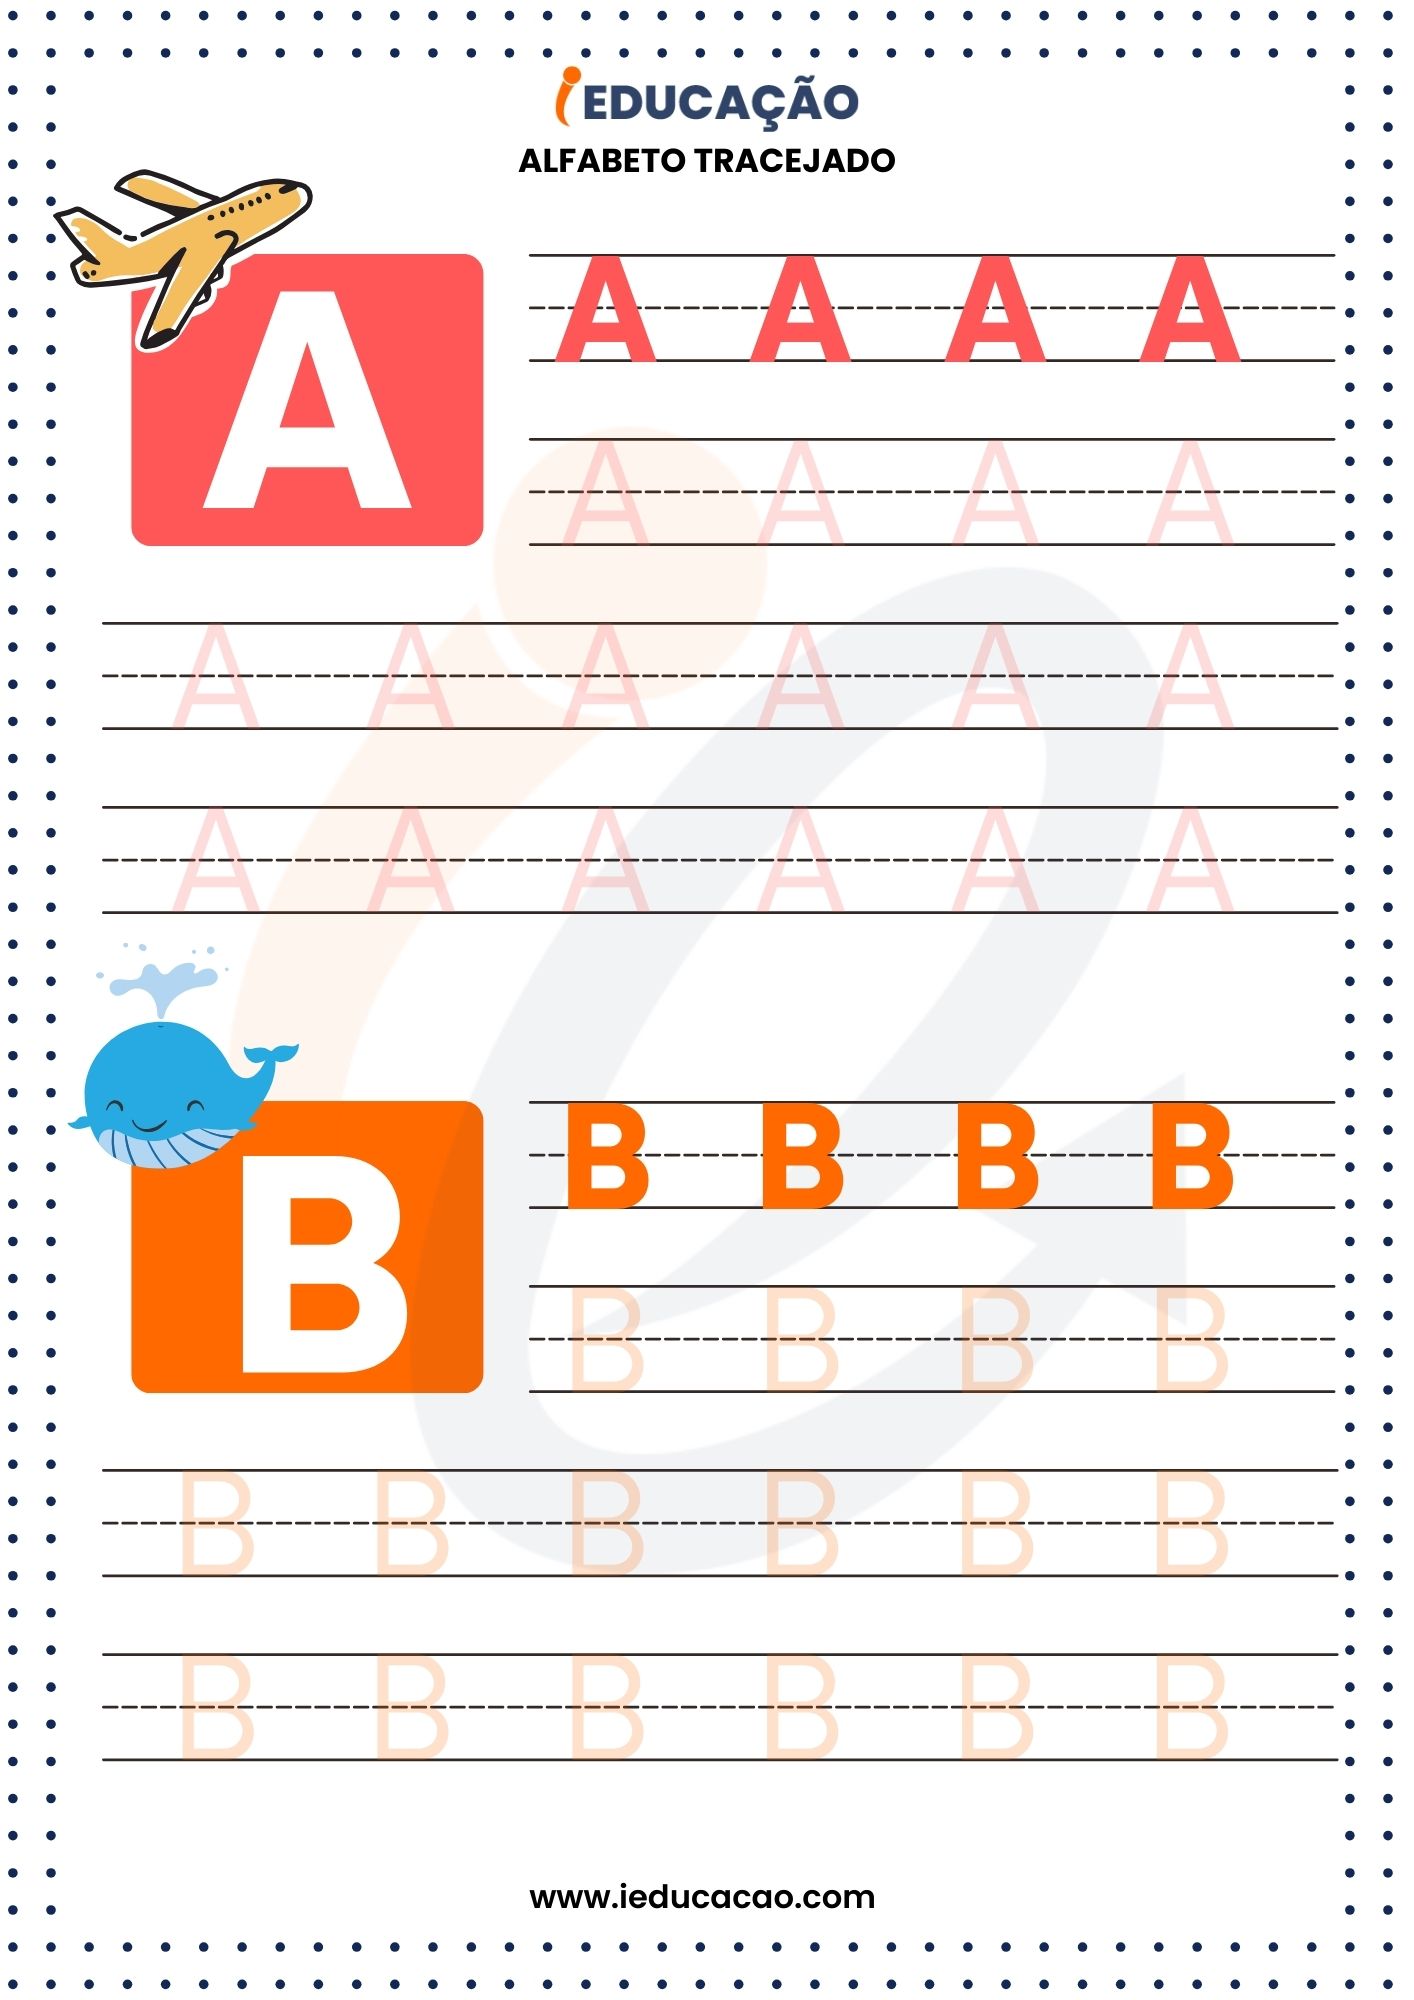 Alfabeto Tracejado A e B